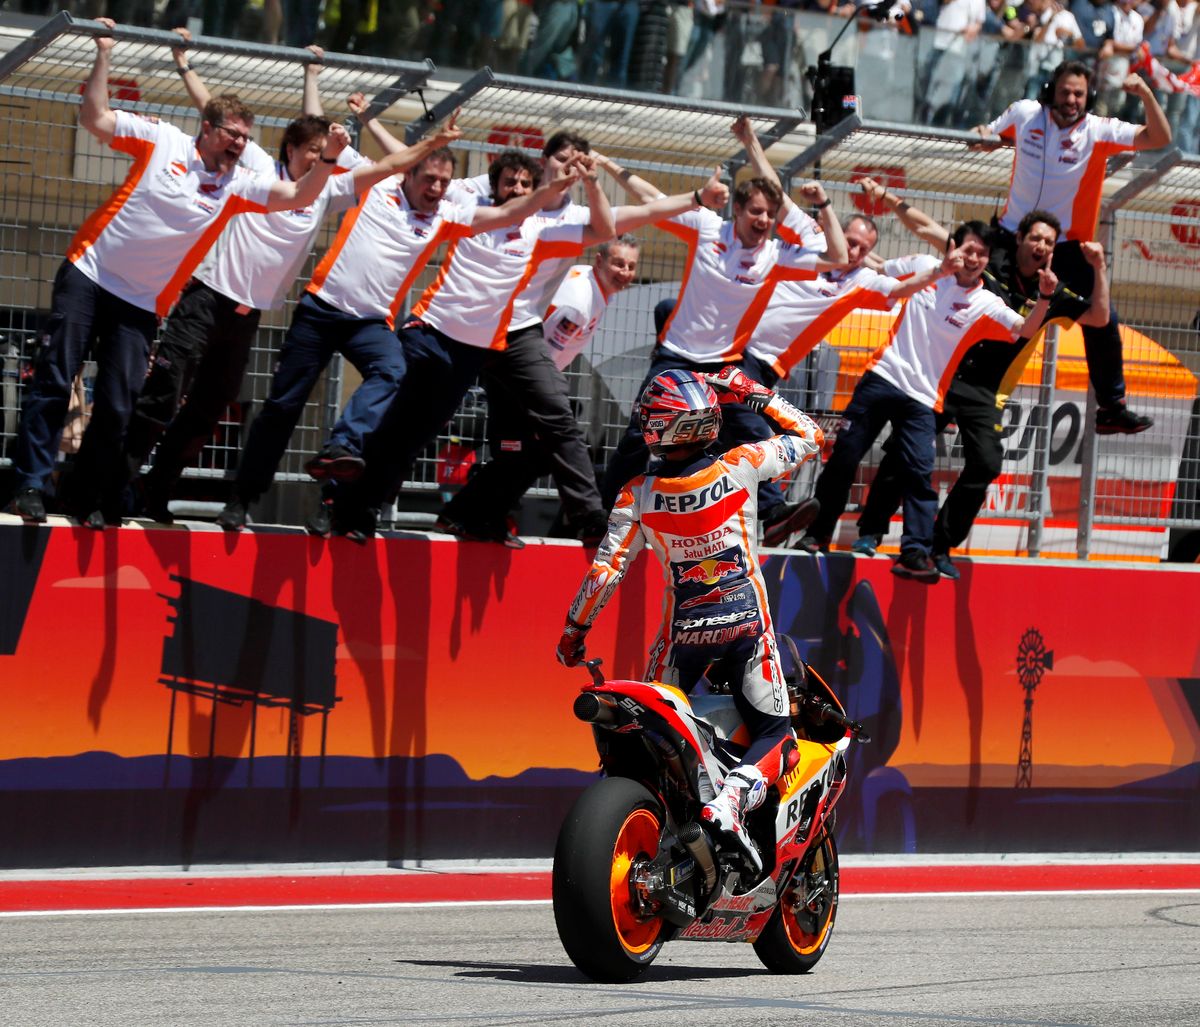 Csapattársai ünneplik a MotoGP géposztályban Hondával versenyző spanyol Marc Márquezt, miután megnyerte a gyorsaságimotoros világbajnokság Amerikai Nagydíját a Texas állambeli Austinban 2018. április 22-én. (MTI/EPA/Paul Buck)